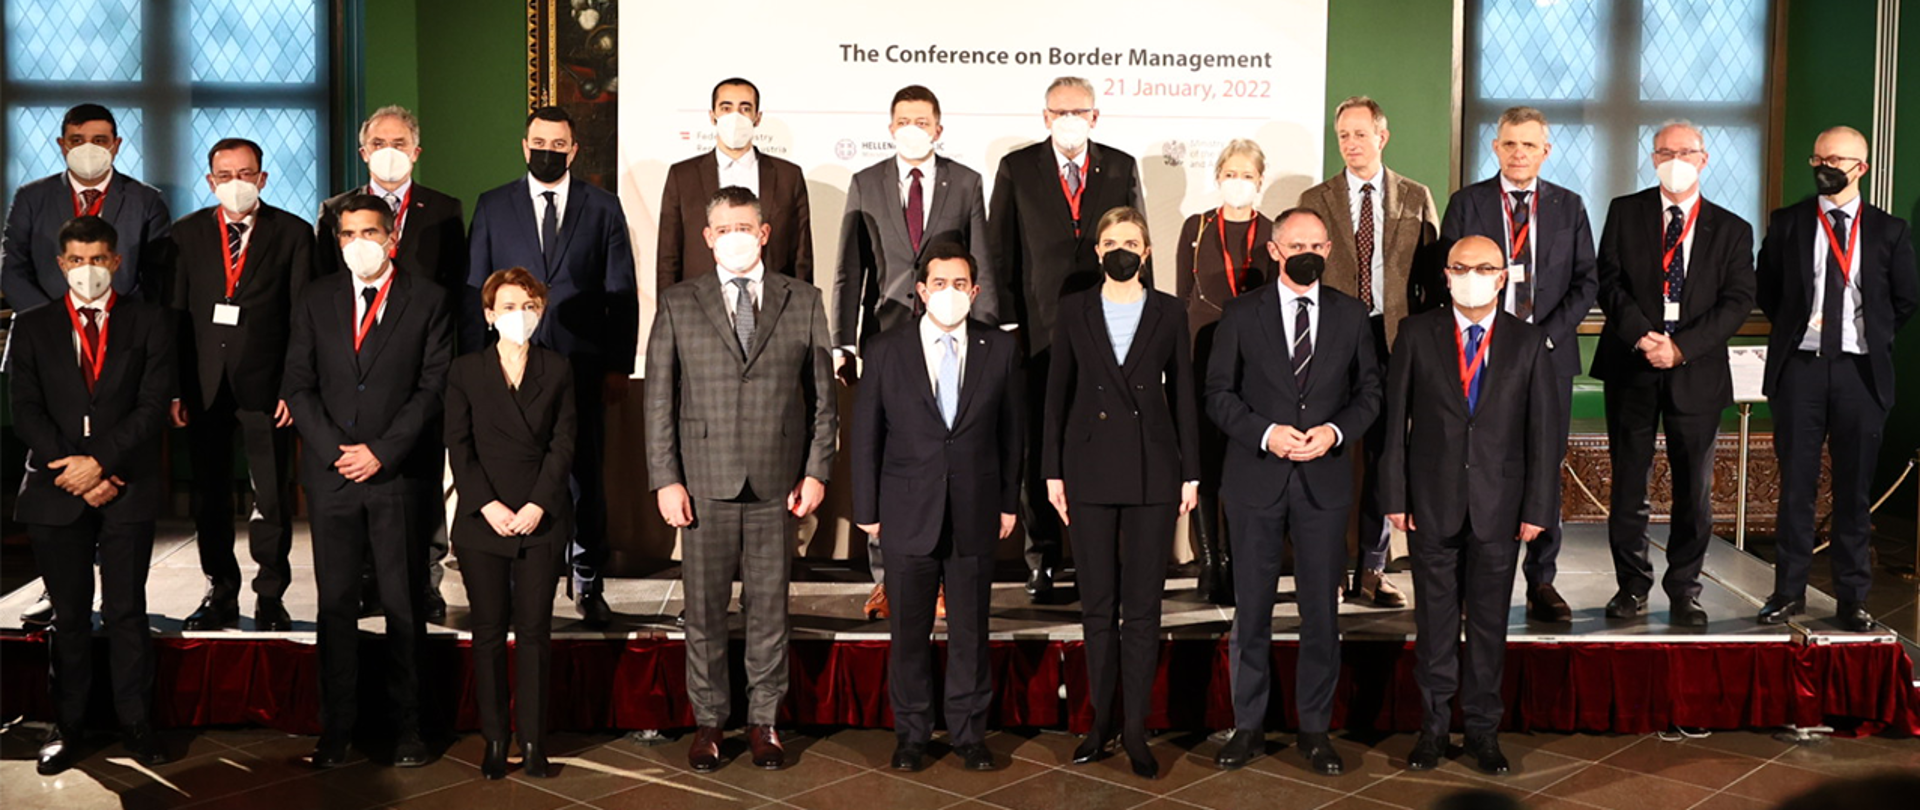 Na zdjęciu widać ministra Mariusza Kamińskiego pozującego do zdjęcia z innymi uczestnikami konferencji.